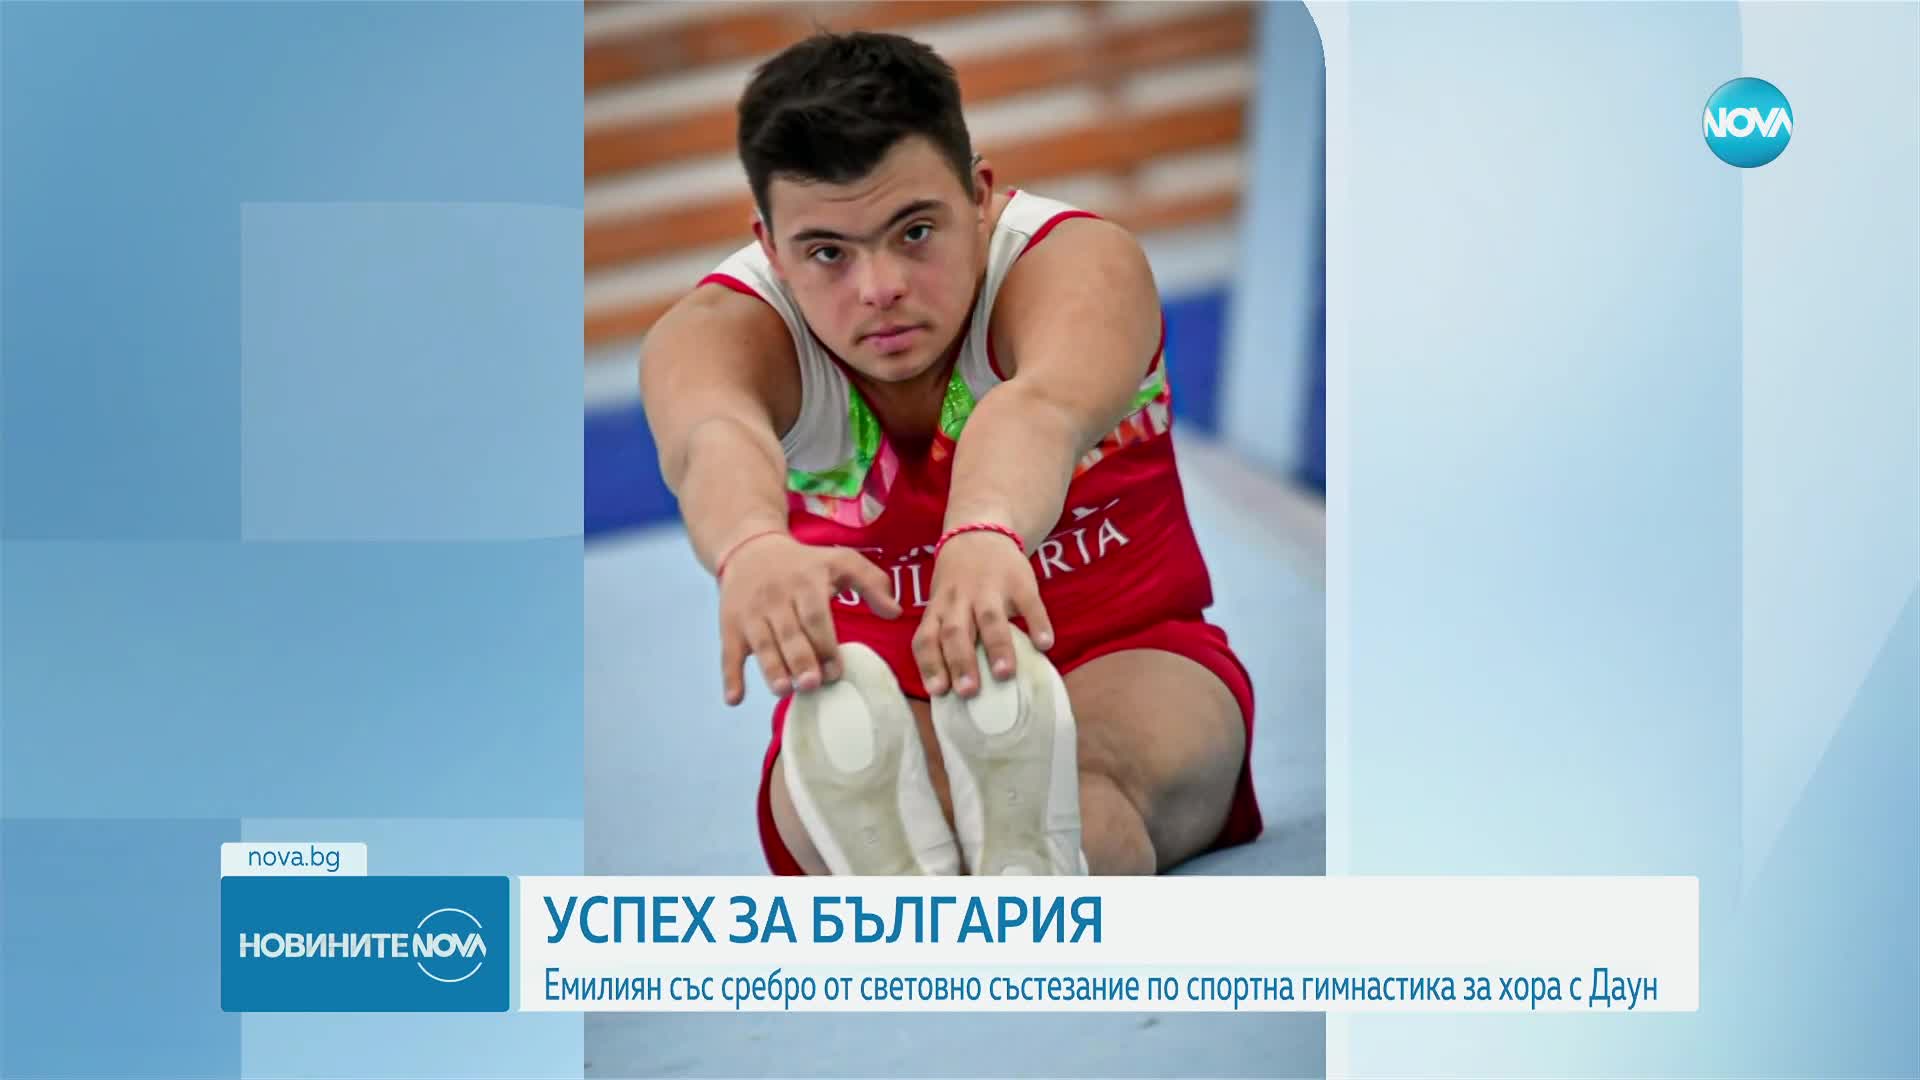 Майката на българина със Синдром на Даун, спечил сребро на турнир по спортна гимнастика: Това е геро